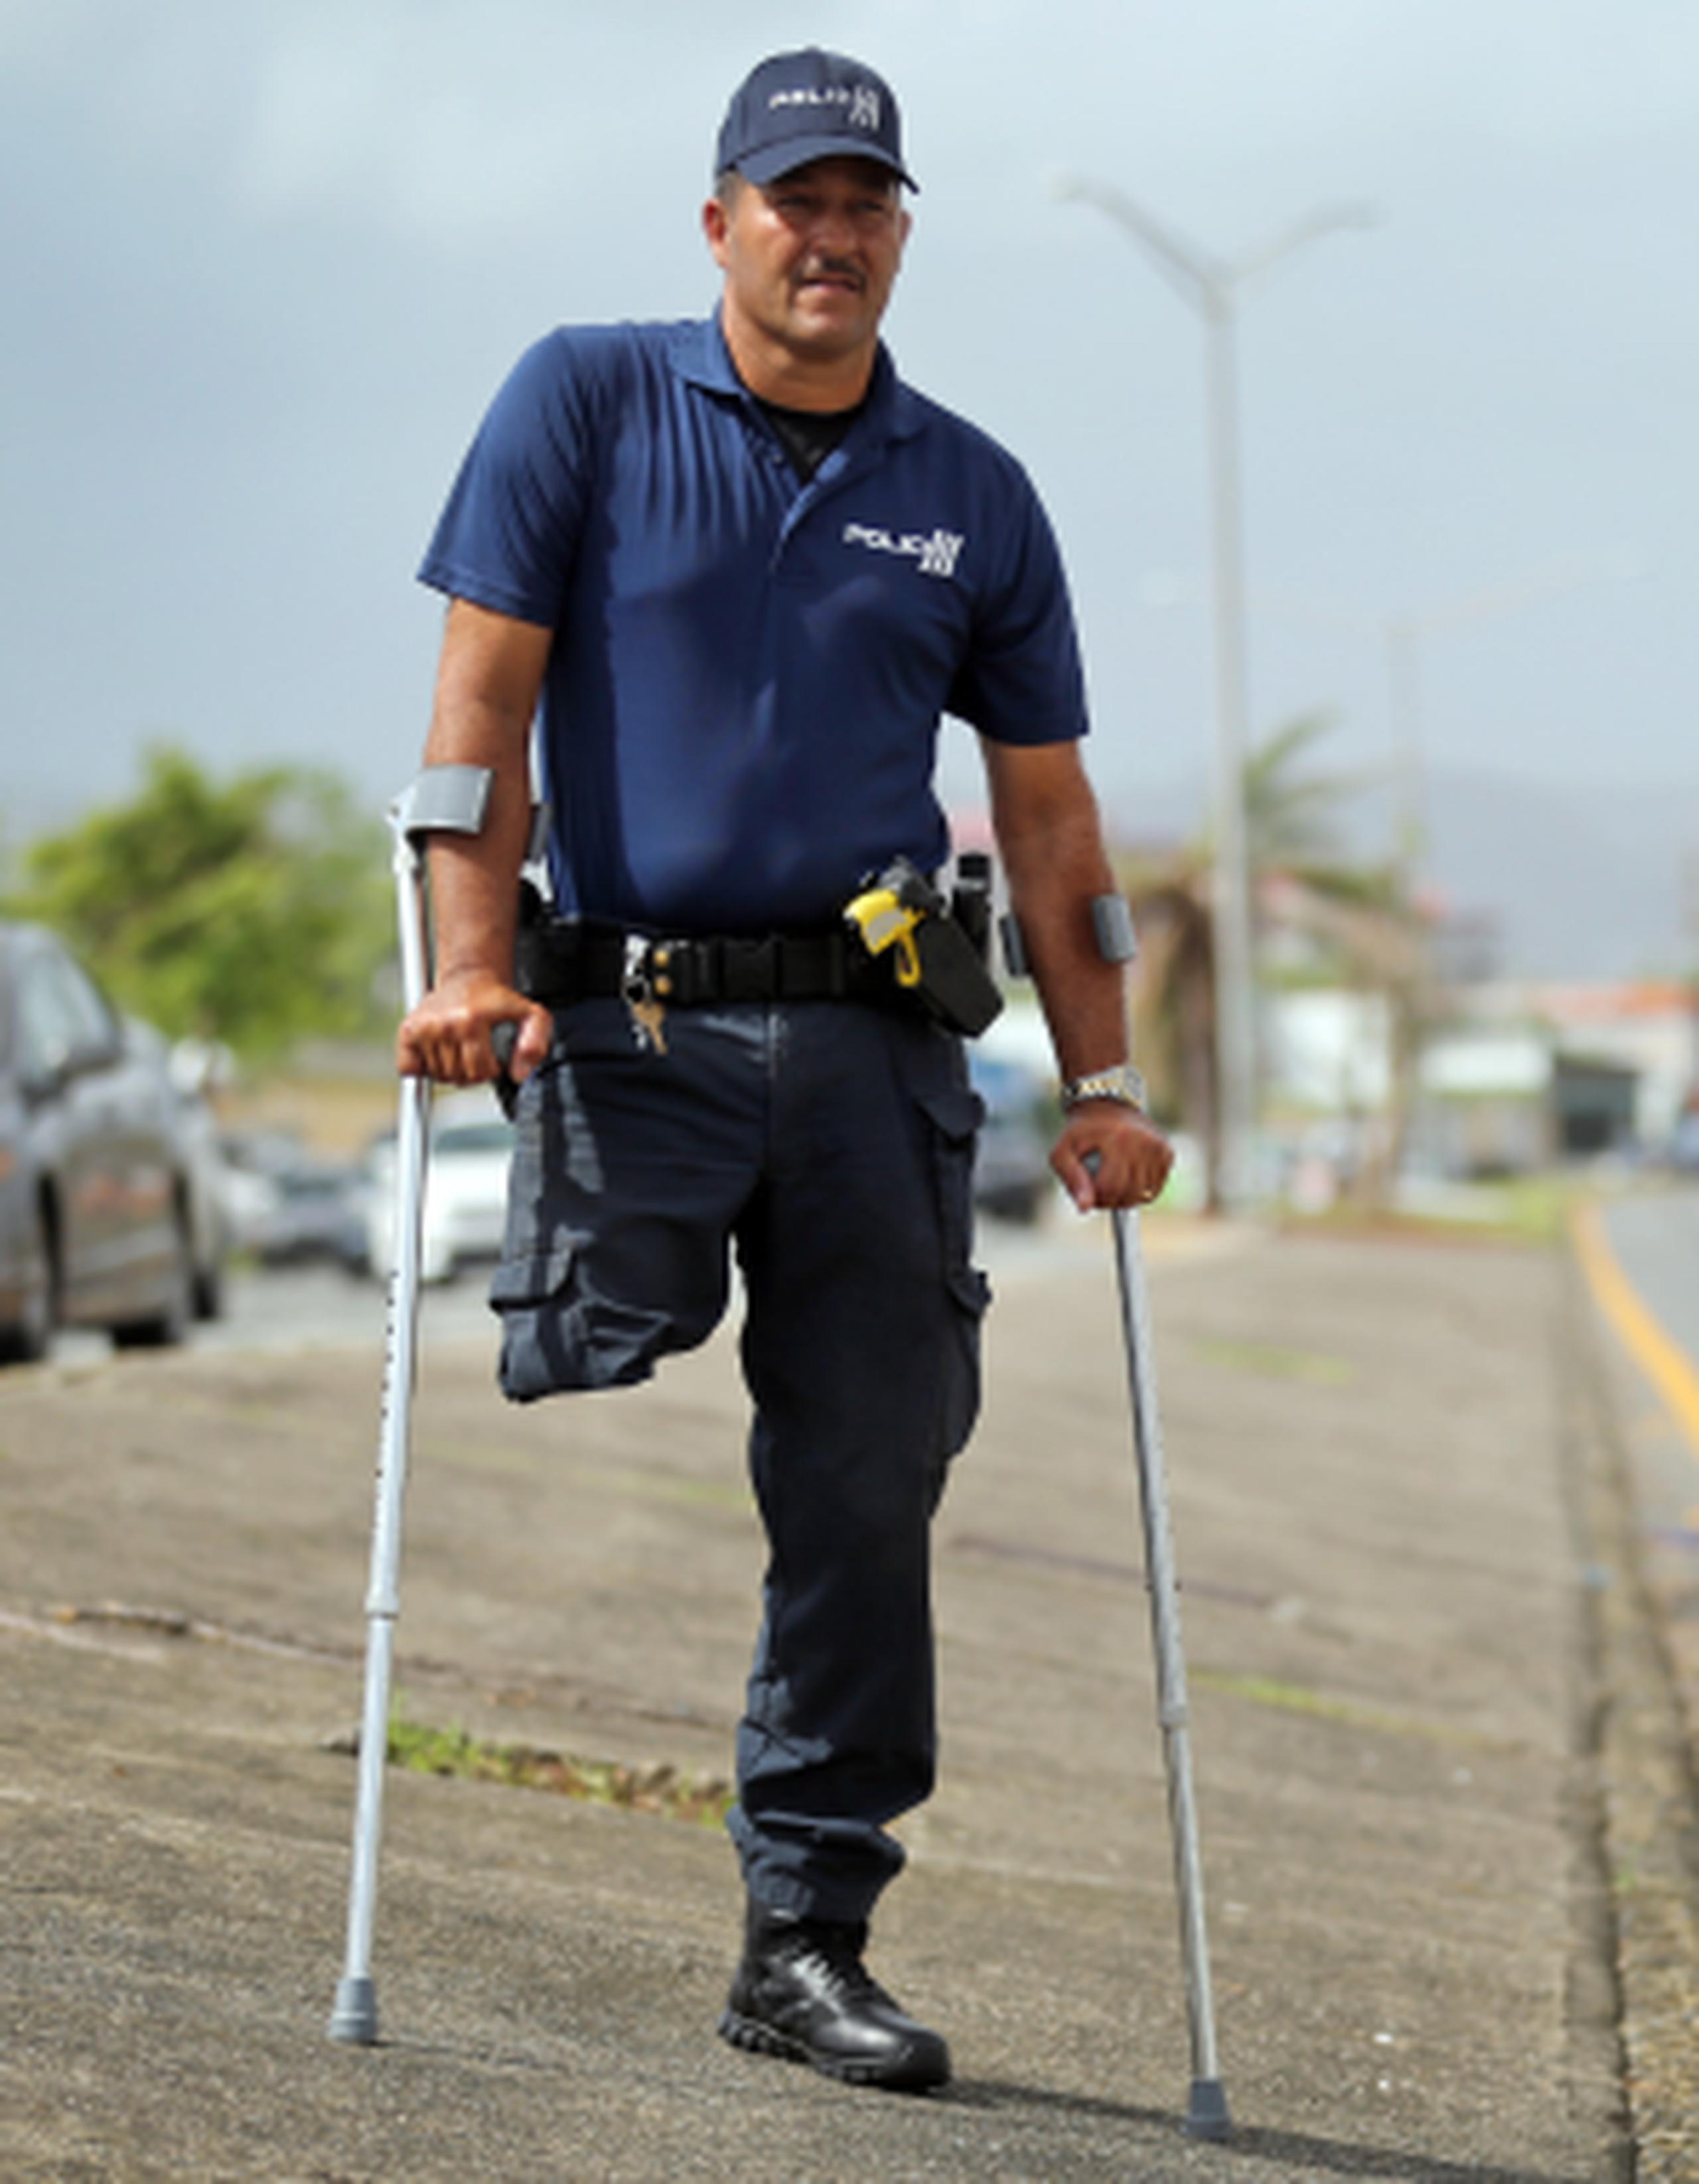 El agente Ralffy Díaz Reyes se ha convertido en un símbolo de fortaleza ante la adversidad, especialmente para los conductores que lo han visto en la calle dando el tránsito. (juan.martinez@gfrmedia.com)